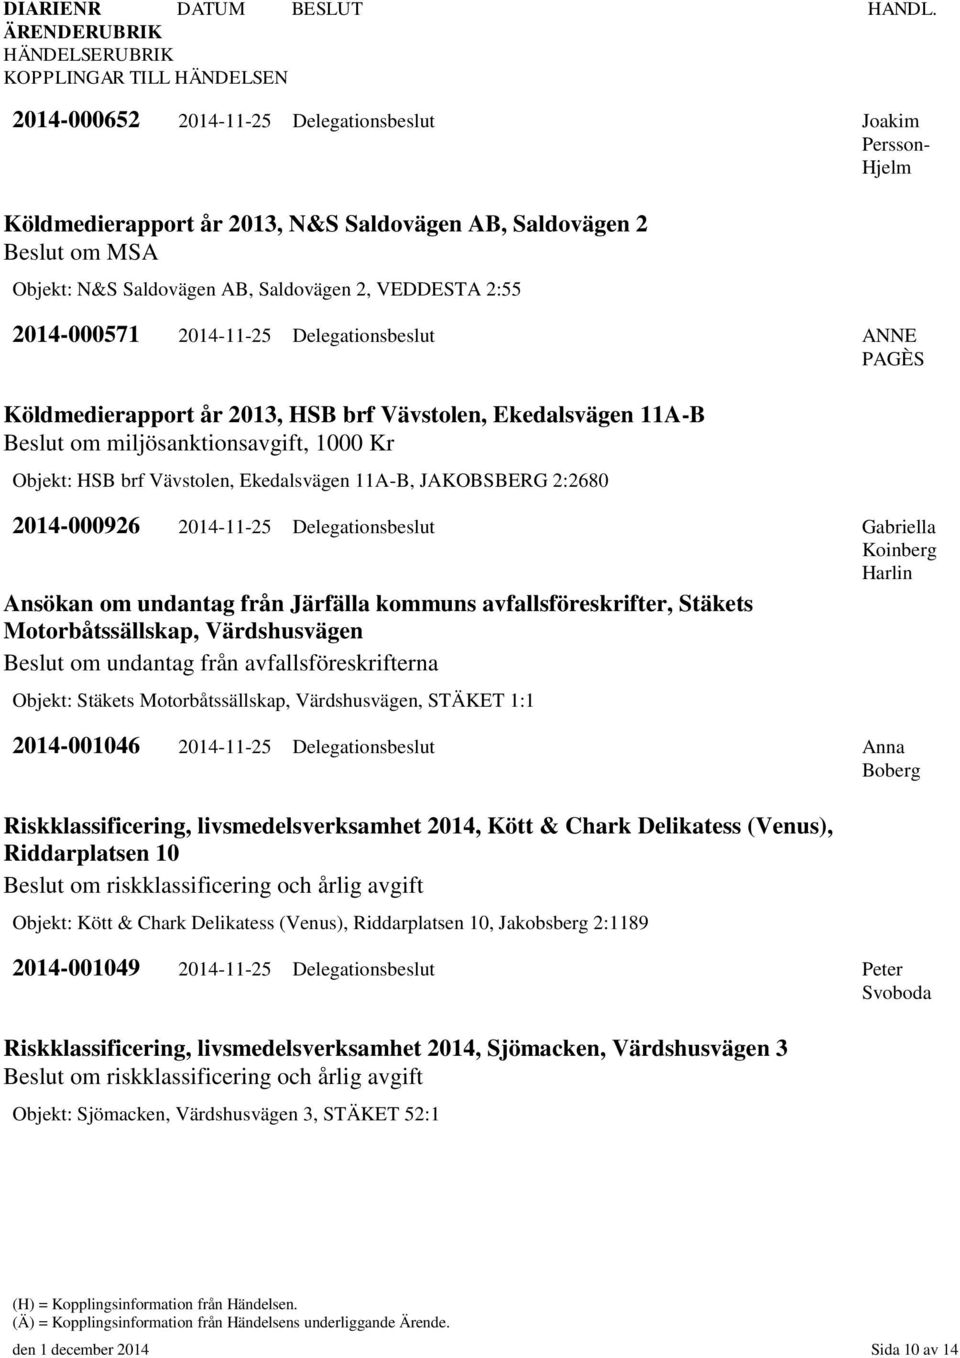 2:2680 2014-000926 2014-11-25 Delegationsbeslut Gabriella Ansökan om undantag från Järfälla kommuns avfallsföreskrifter, Stäkets Motorbåtssällskap, Värdshusvägen Beslut om undantag från